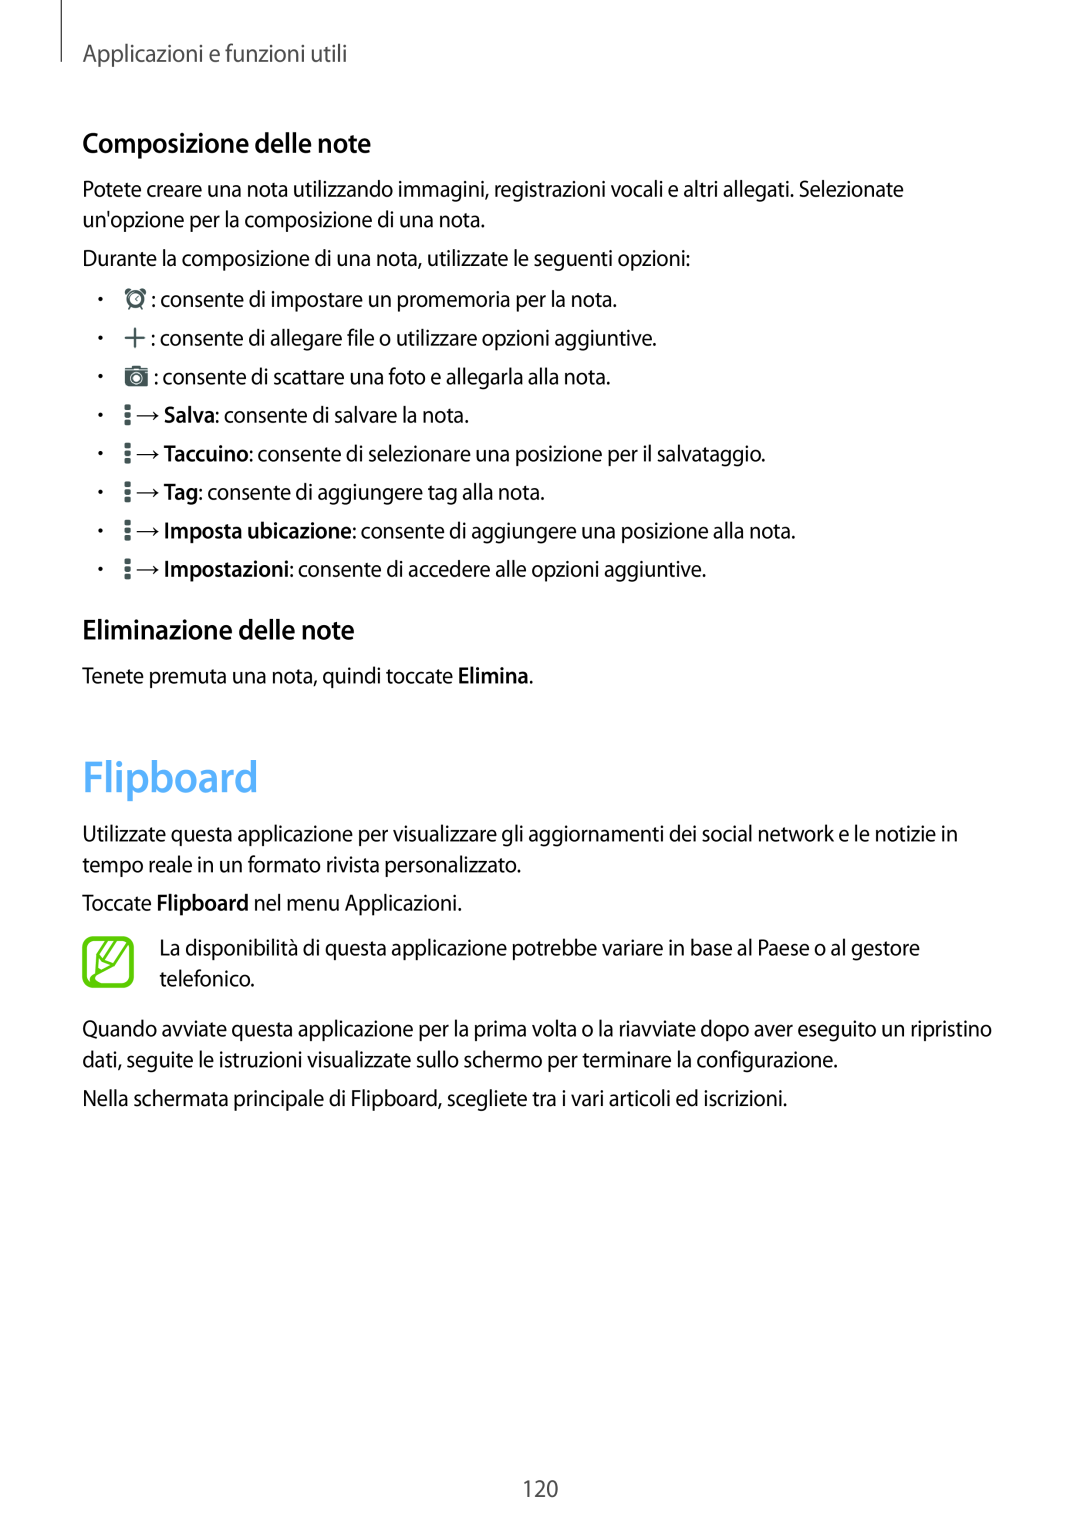 Samsung SM-T700NZWATUR manual Flipboard, Composizione delle note, Eliminazione delle note, Applicazioni e funzioni utili 